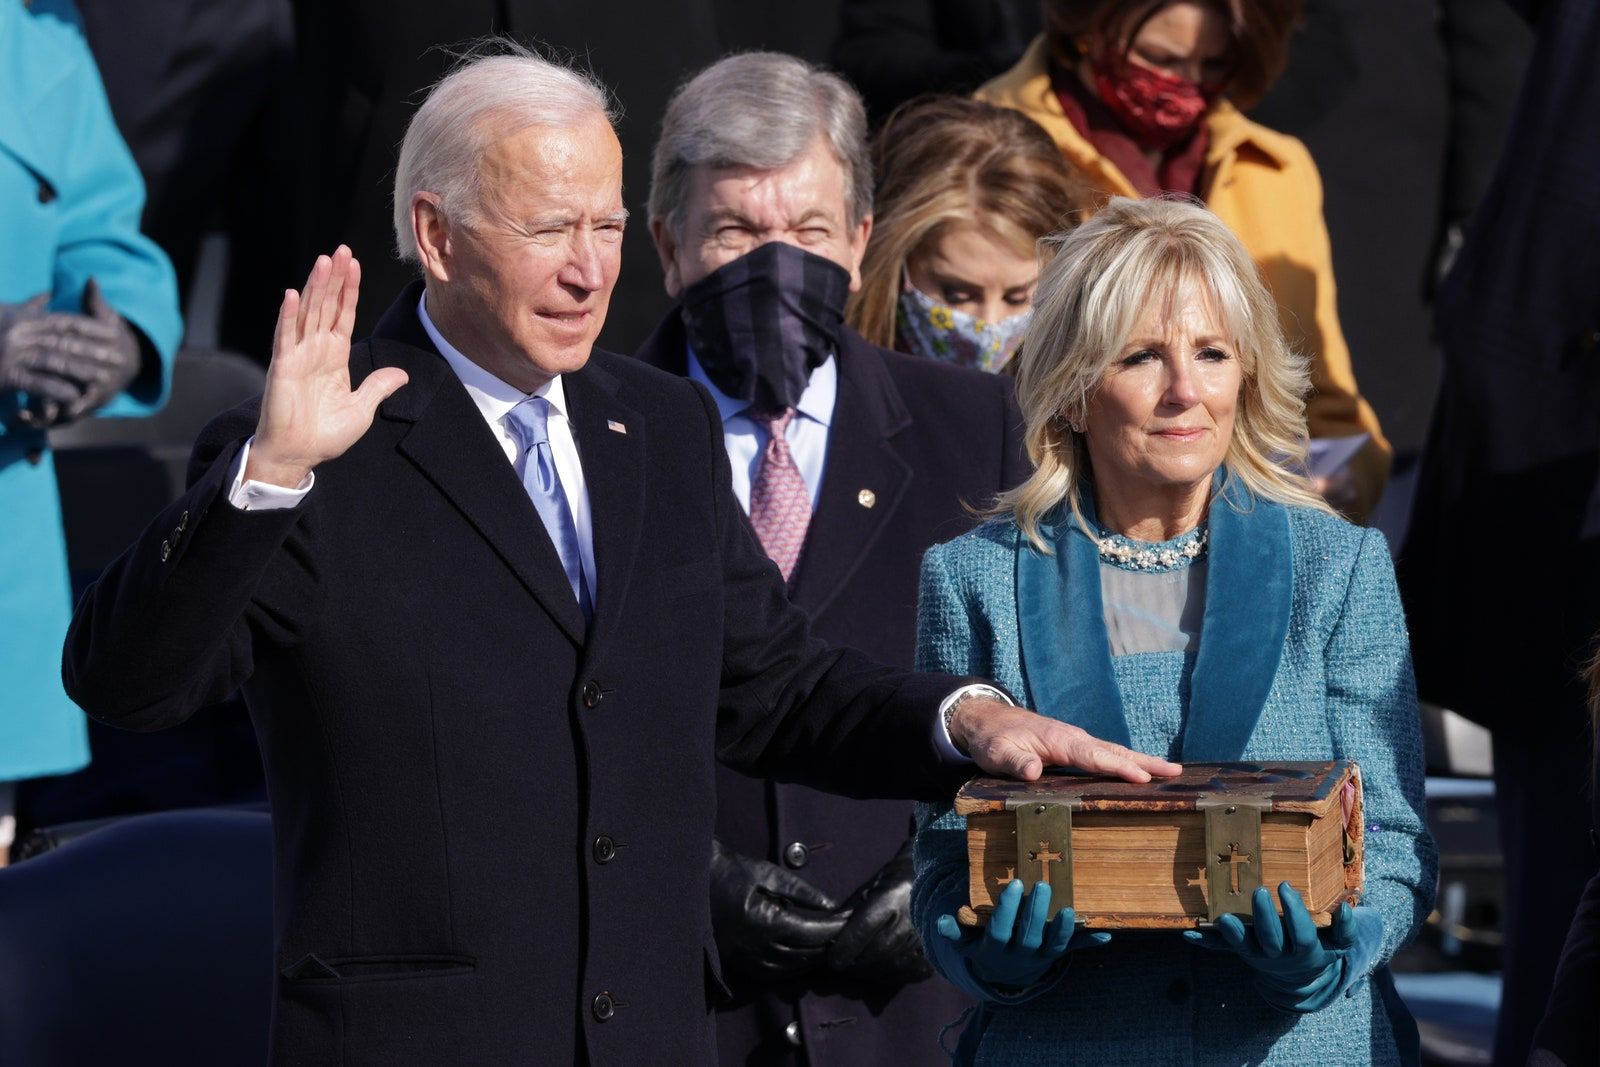 Deretan Gaya Tamu Undangan di Pelantikan Joe Biden - Kamala Harris